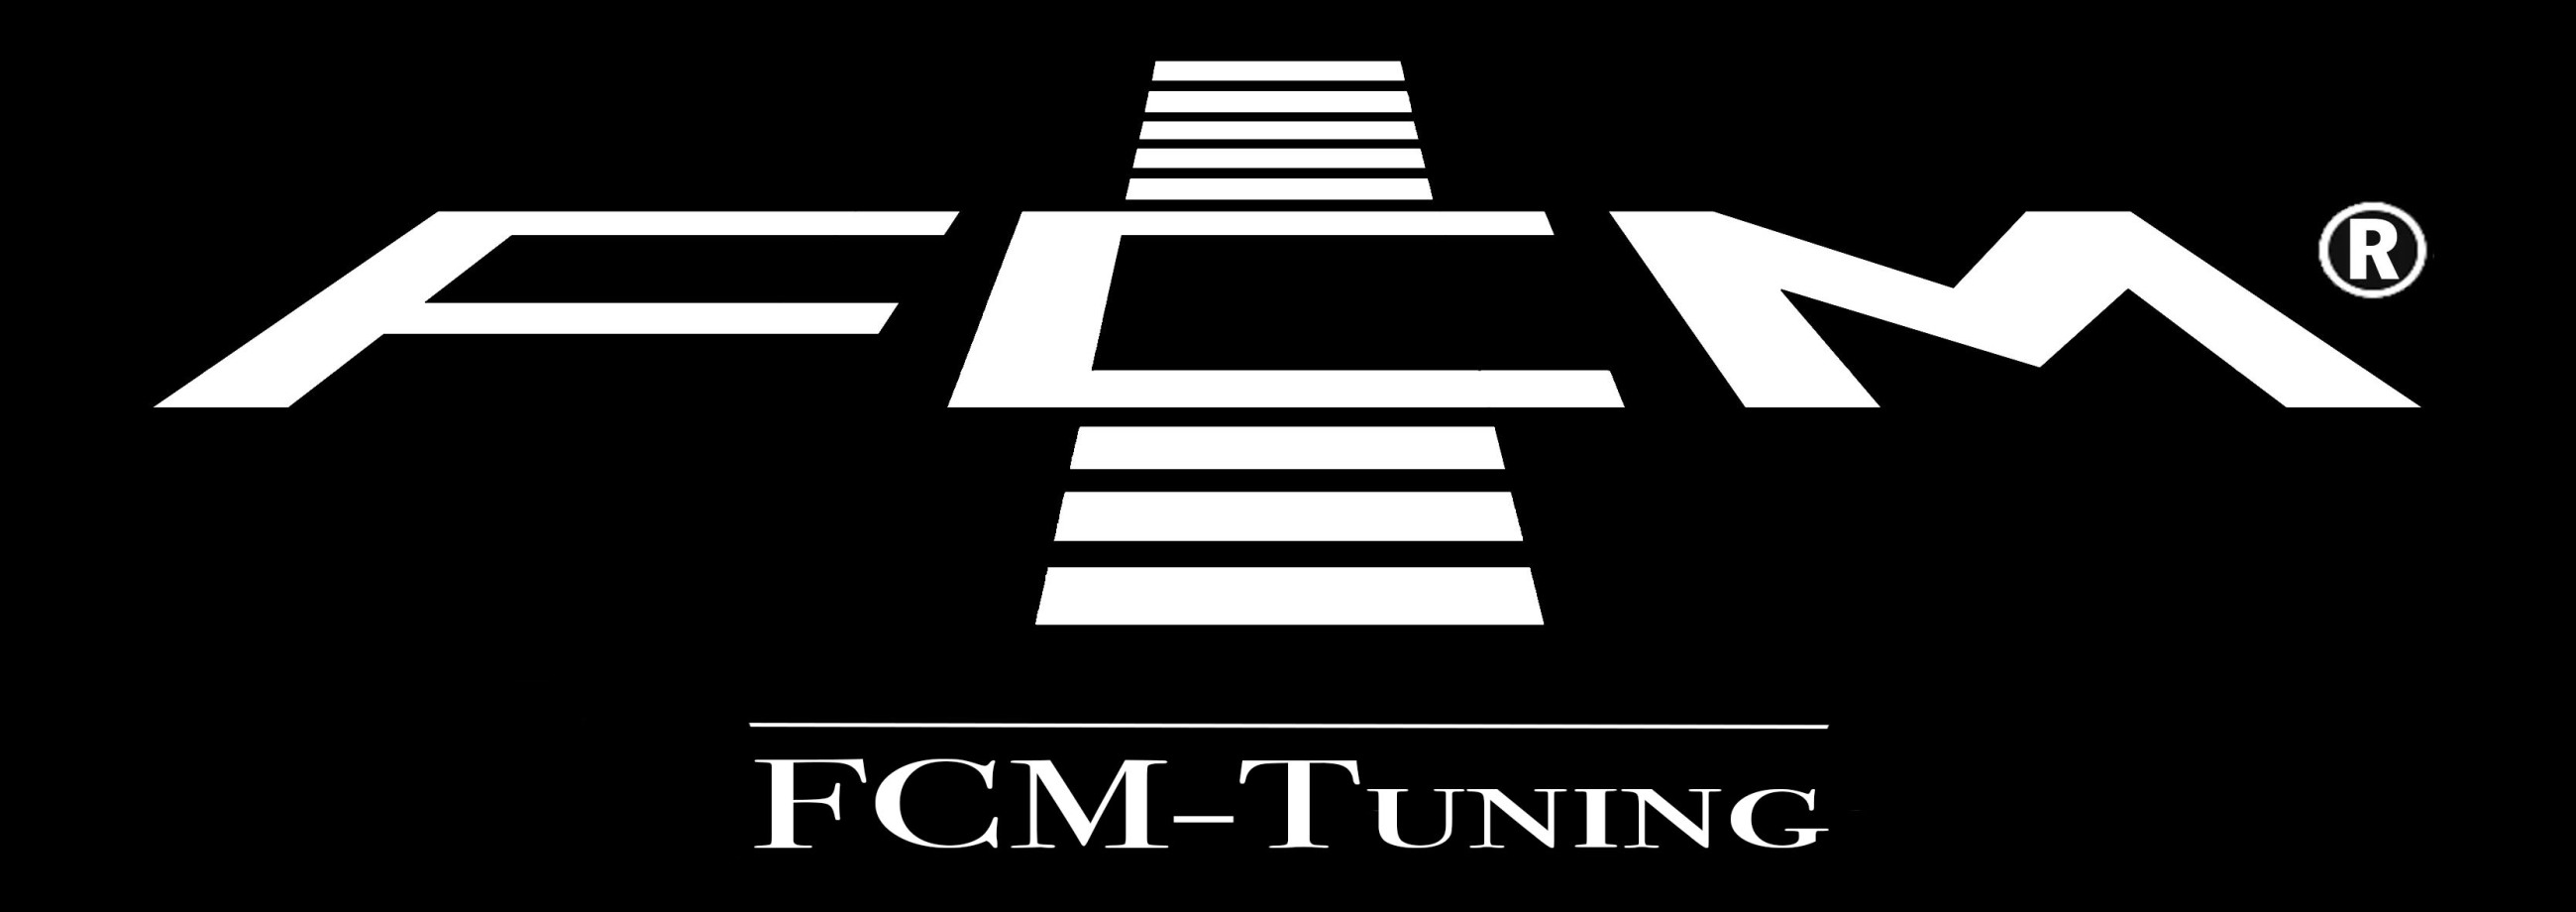 (c) Fcm-tuning.de